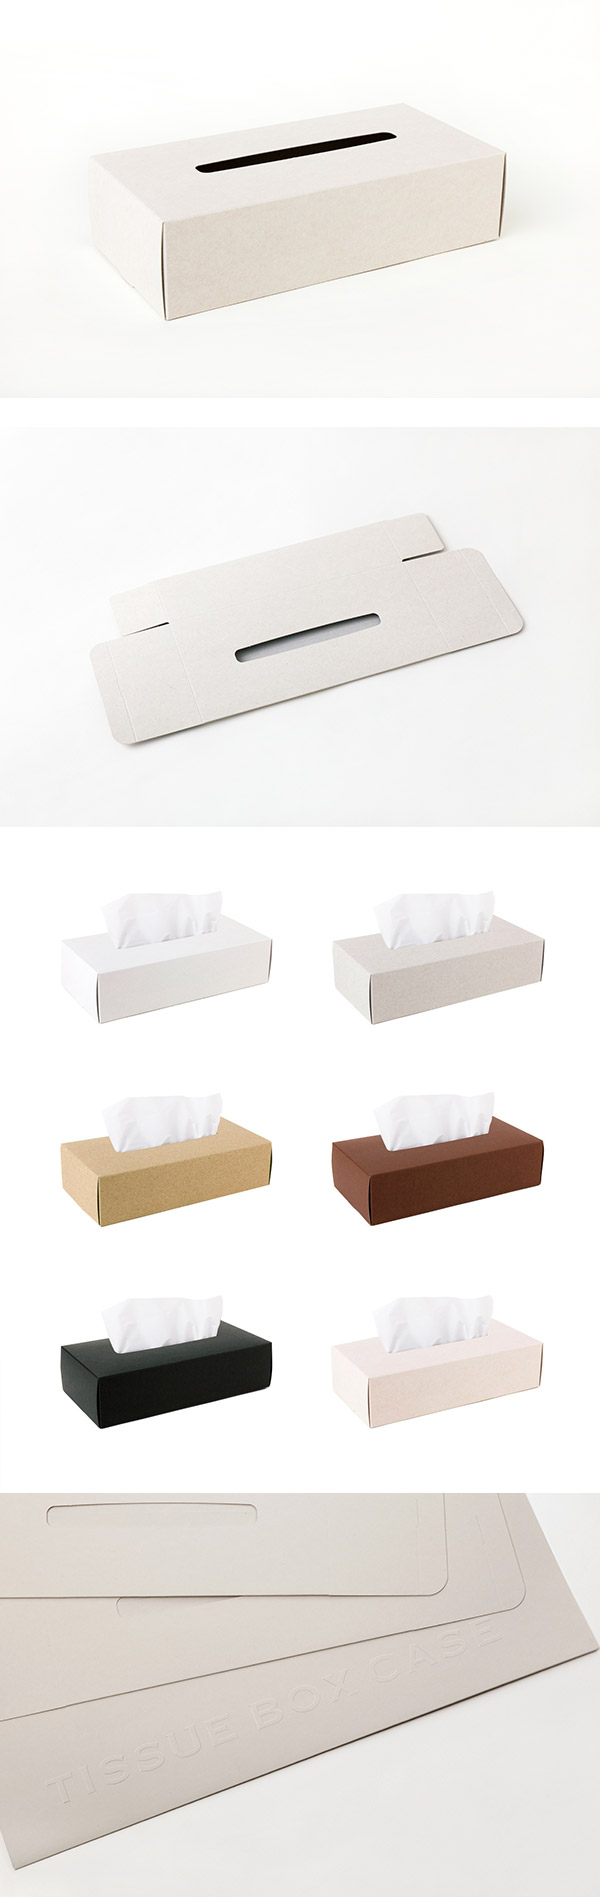 【4/16~4/22精選品牌9折優惠】Perrocaliente TISSUE BOX CASE 面紙盒 2入 米色